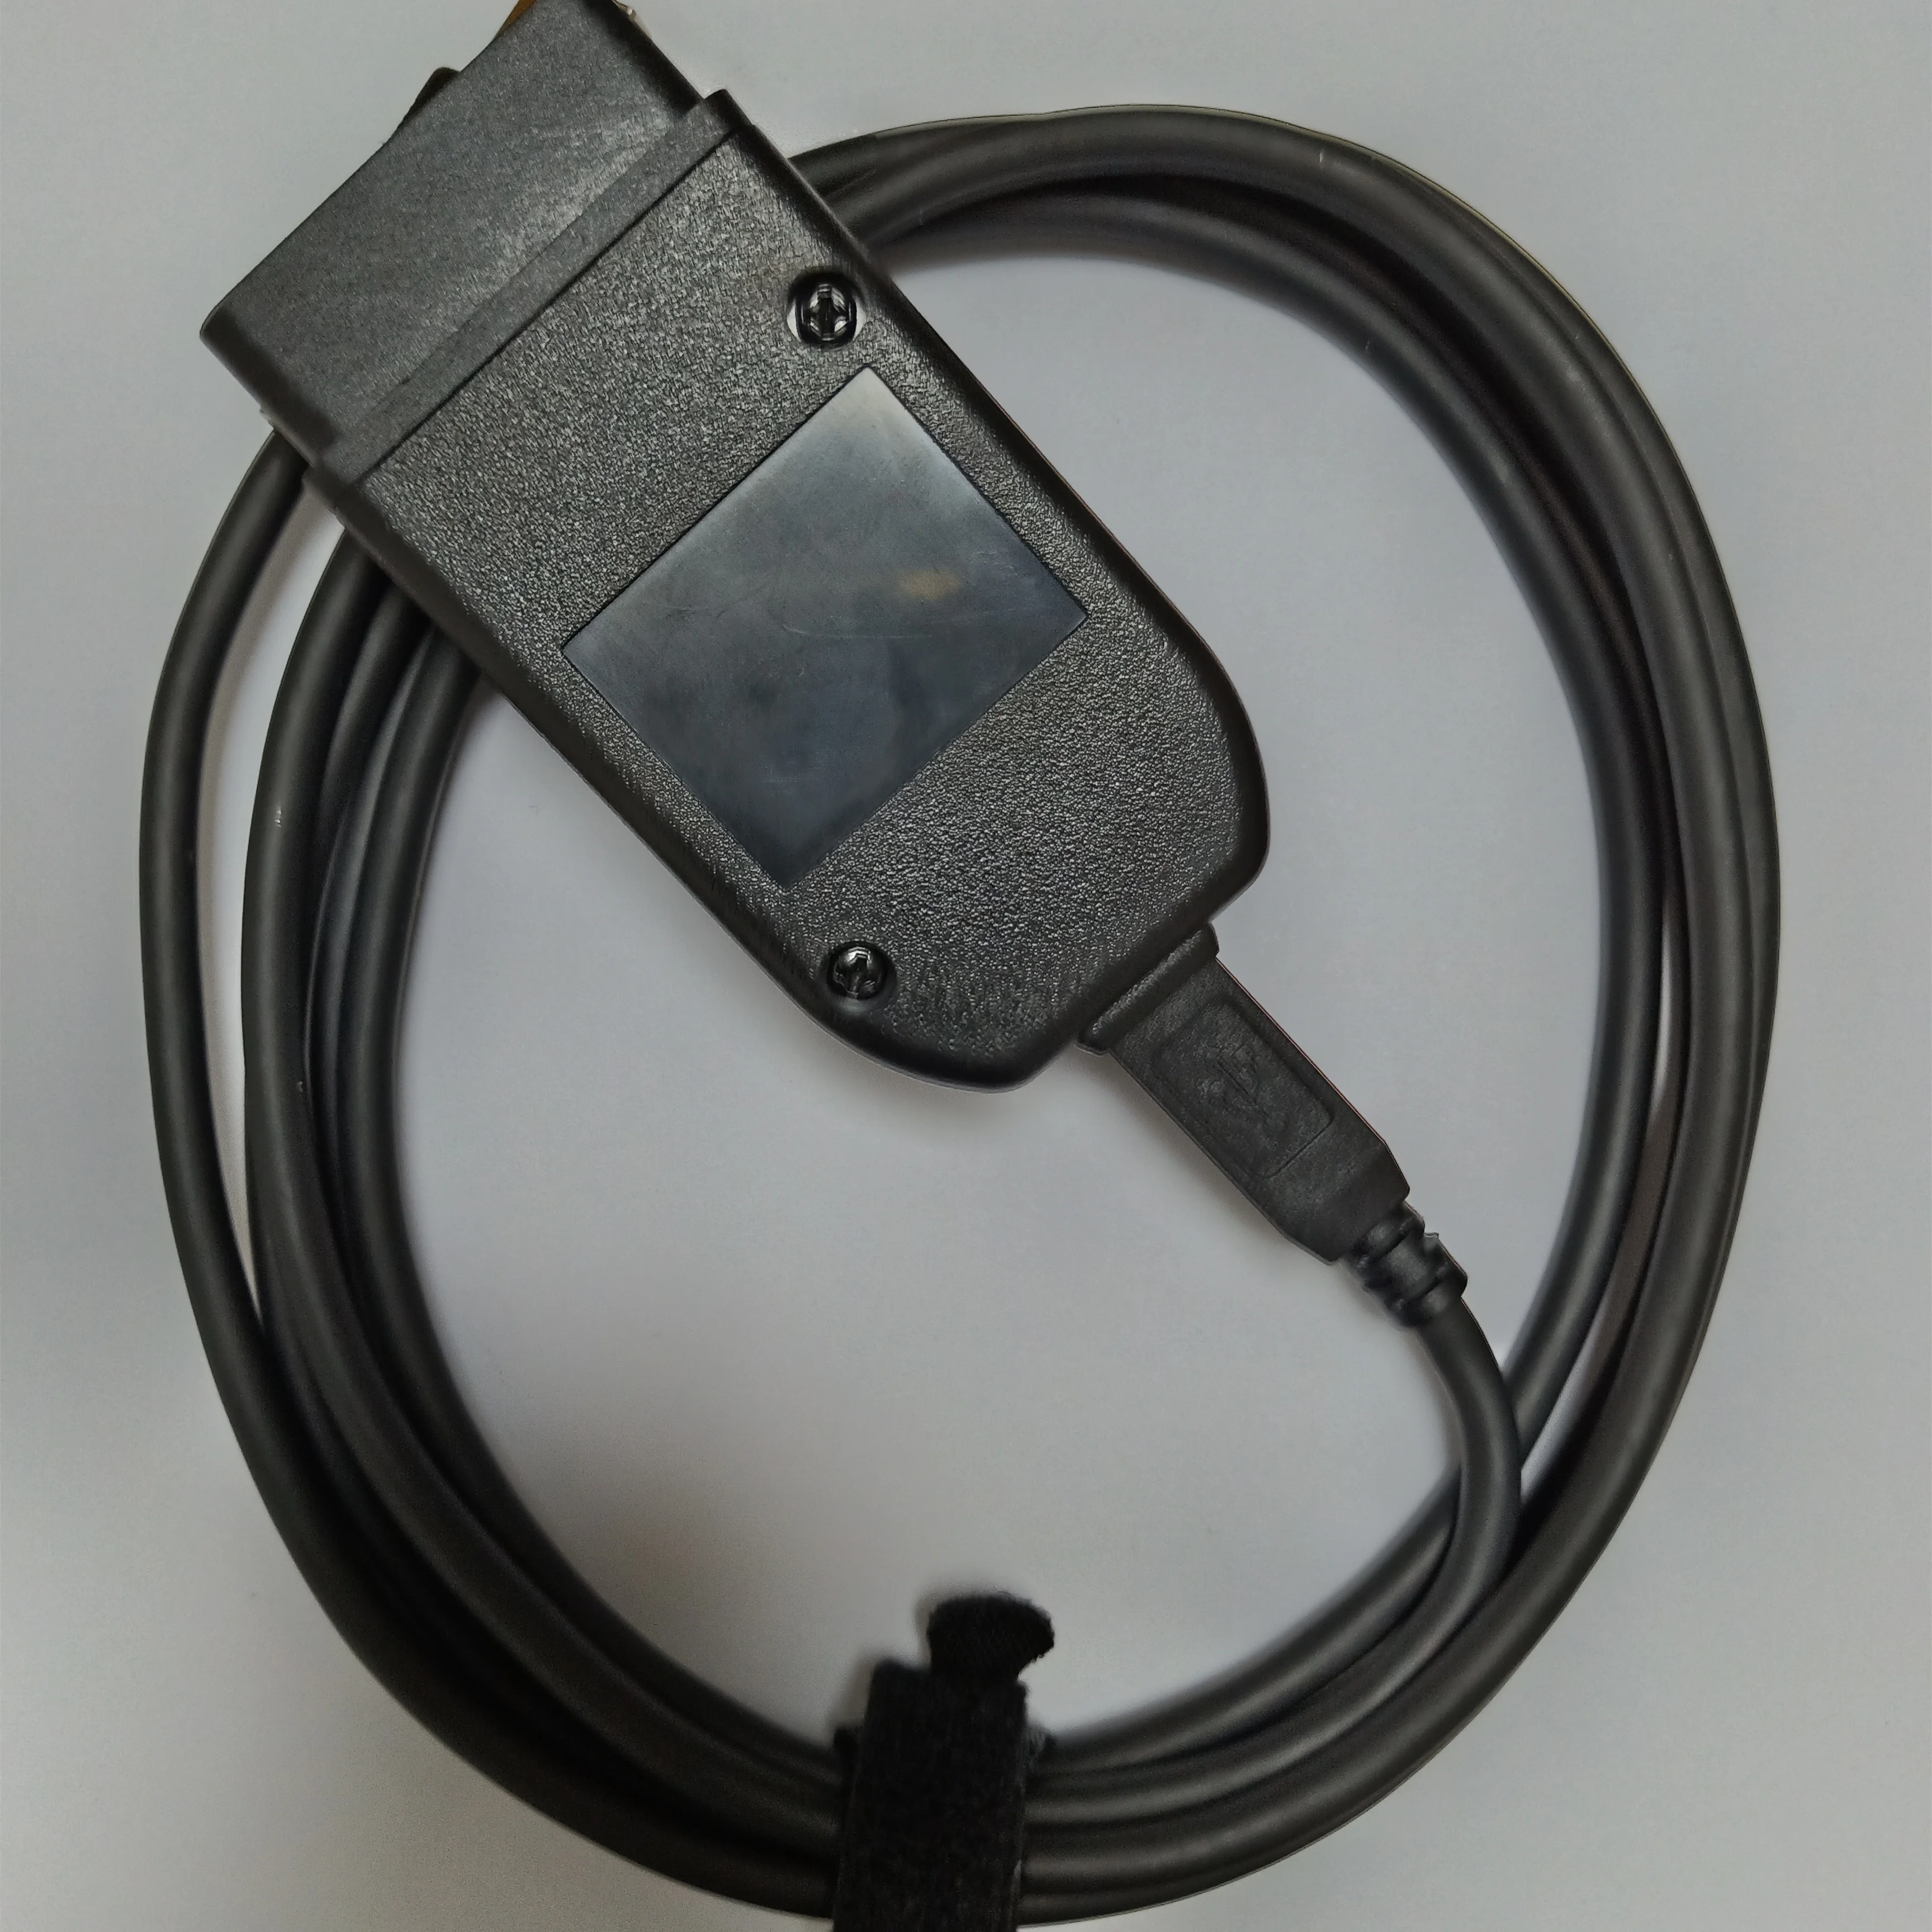 5 шт./лот Автомобильный obd16pin Диагностический кабель для Kline и CAN BUS Поддержка до T002-19 автомобиля